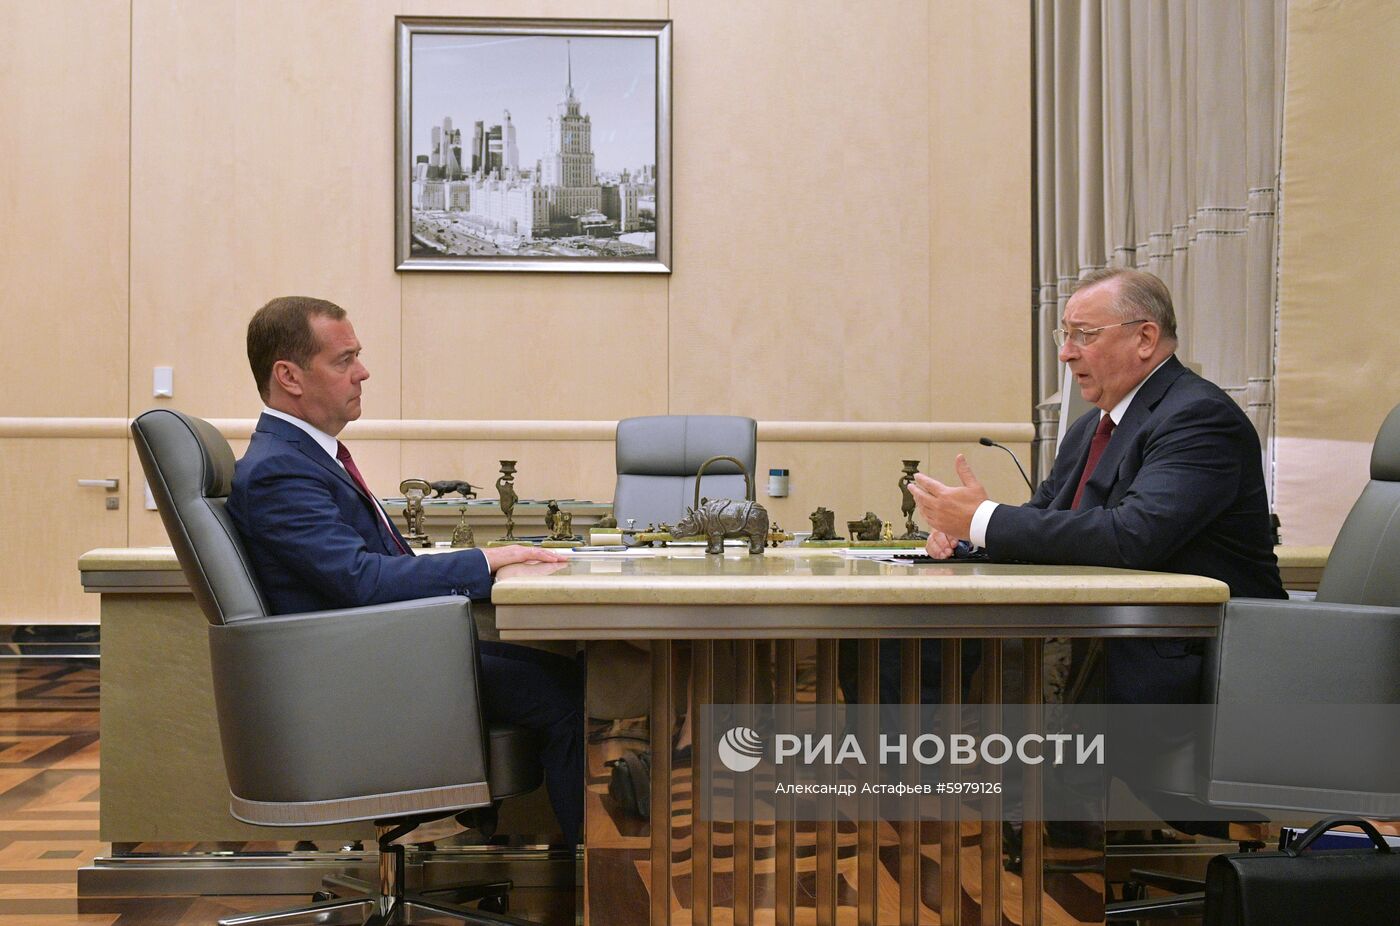 Премьер-министр РФ Д. Медведев встретился с главой ПАО "Транснефть" Н. Токаревым